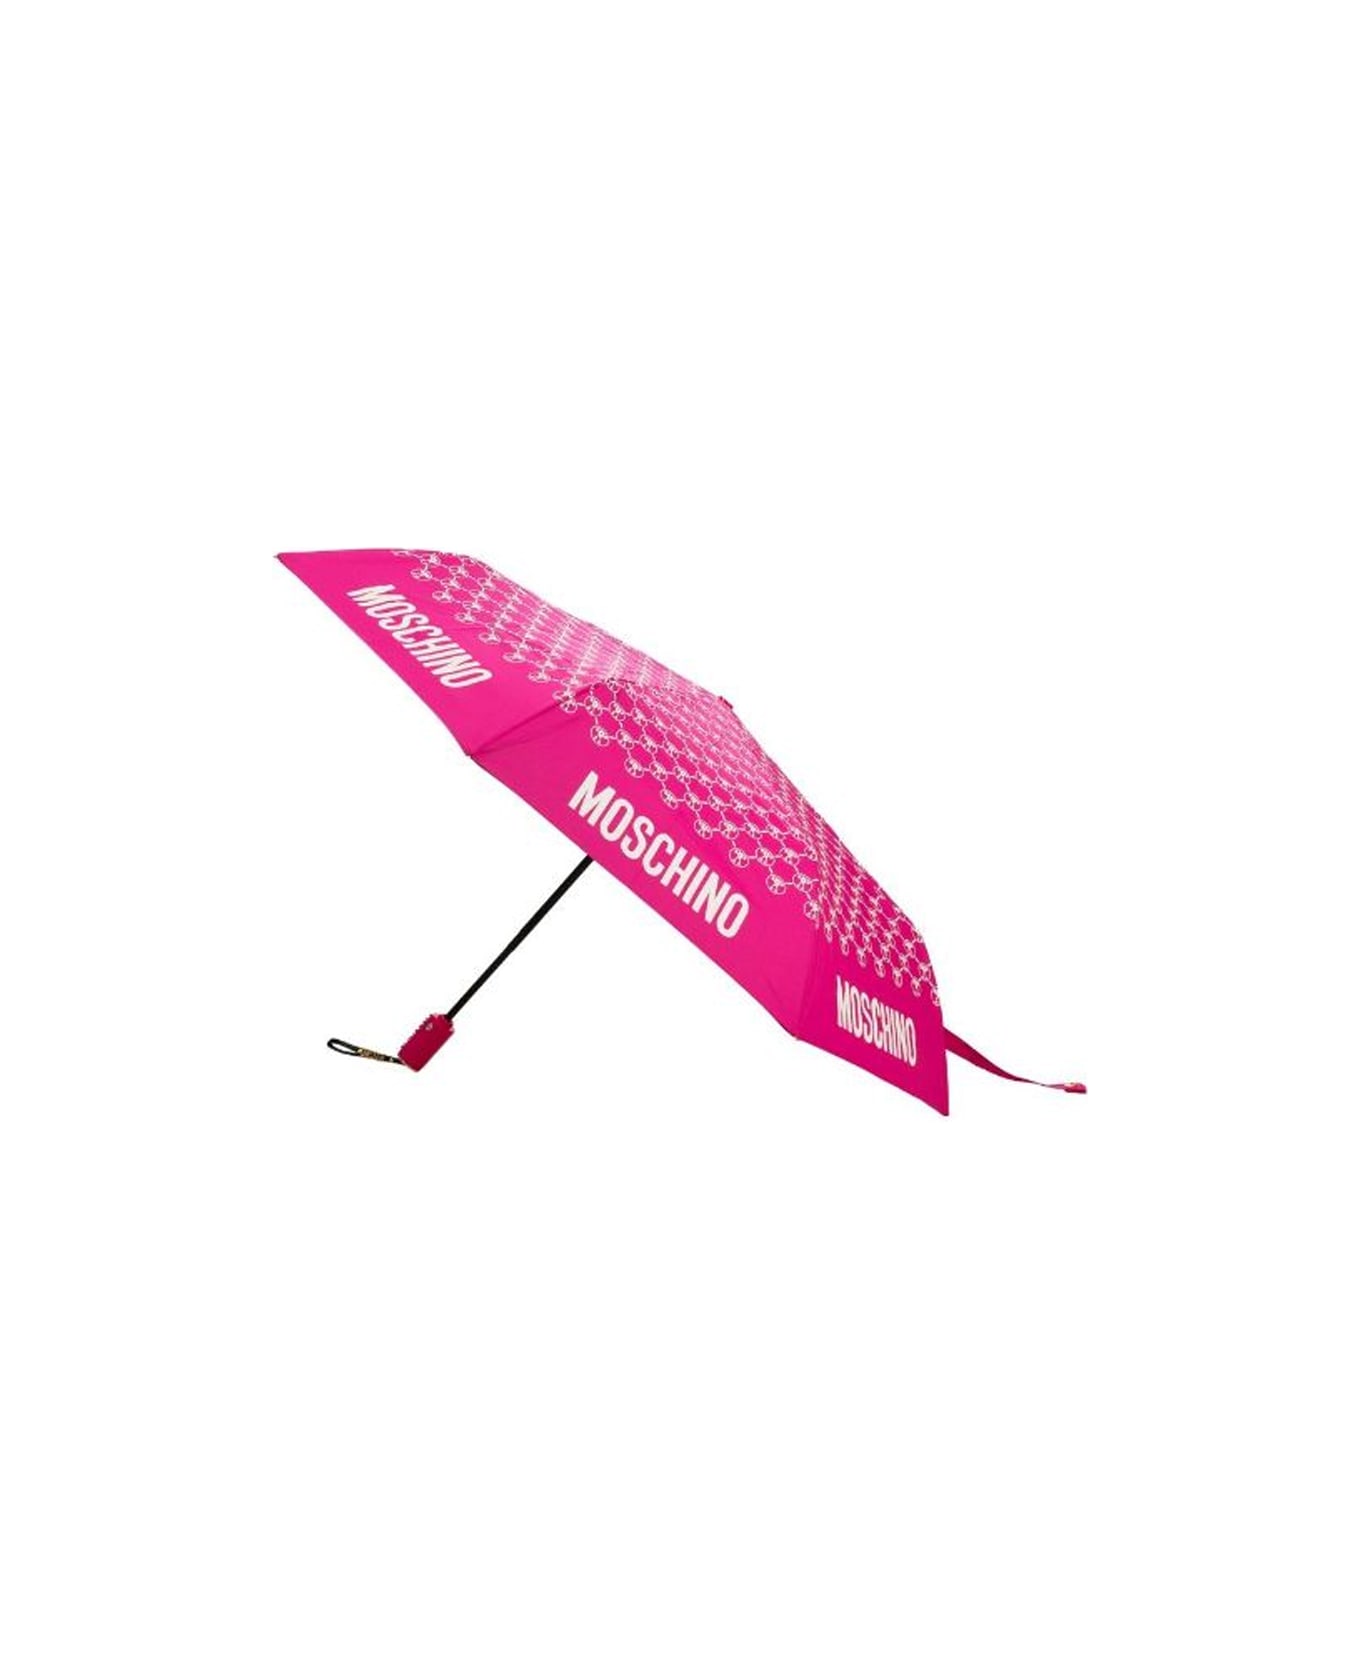 Moschino Dqm Allover Mini Aoc Umbrella - Only 1 left